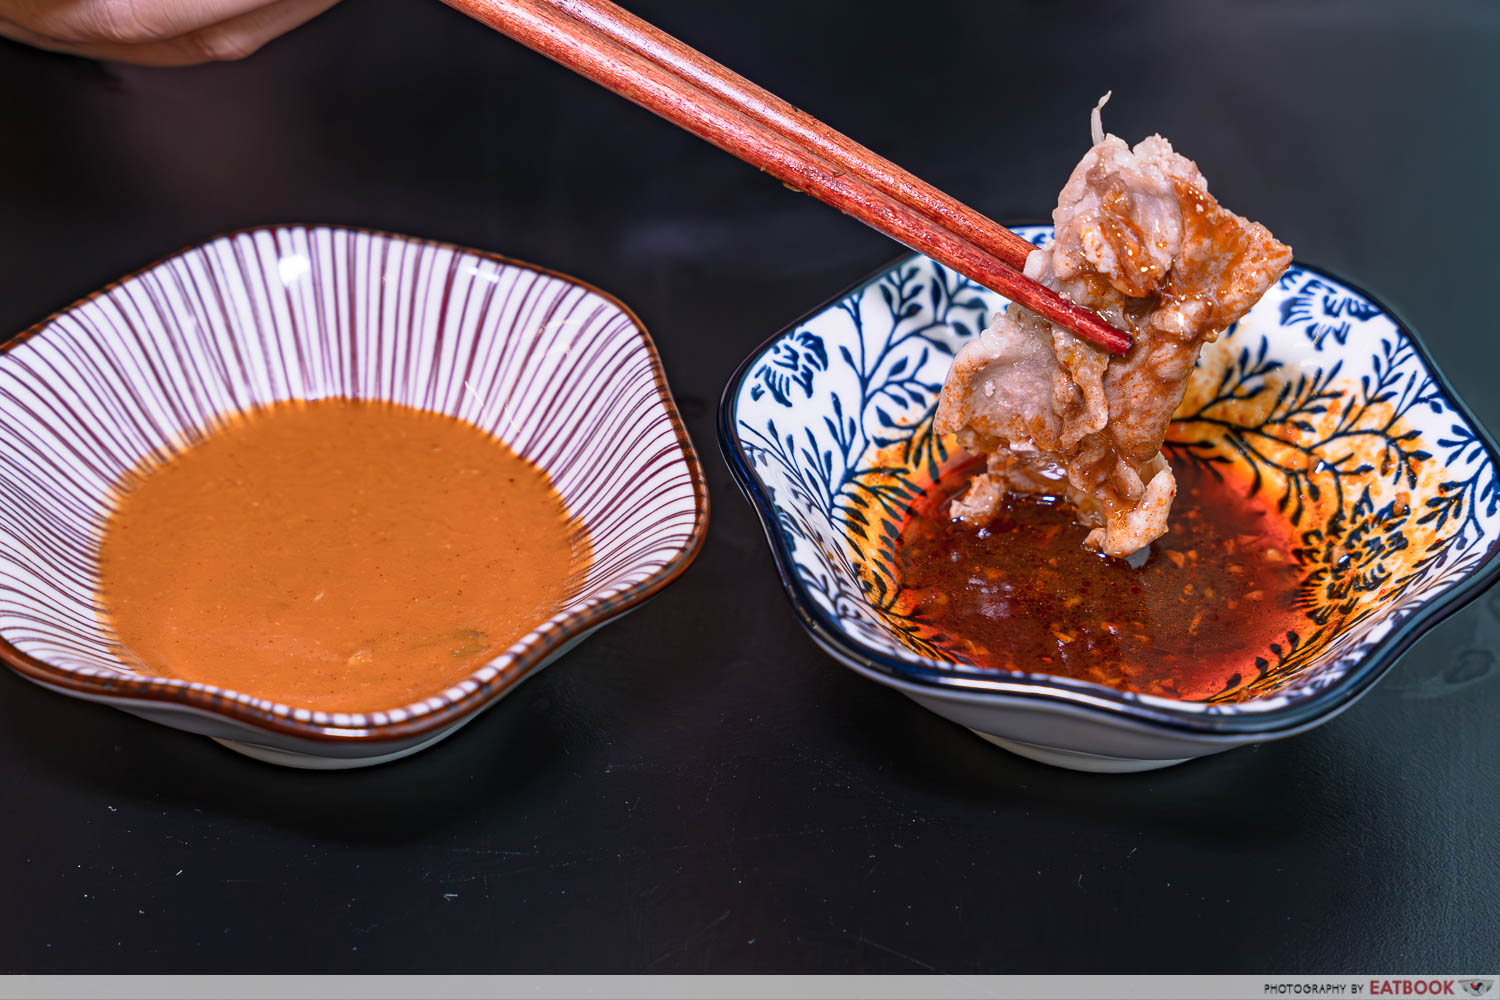 sotpot-phyunbaek-jjim-other-sauces